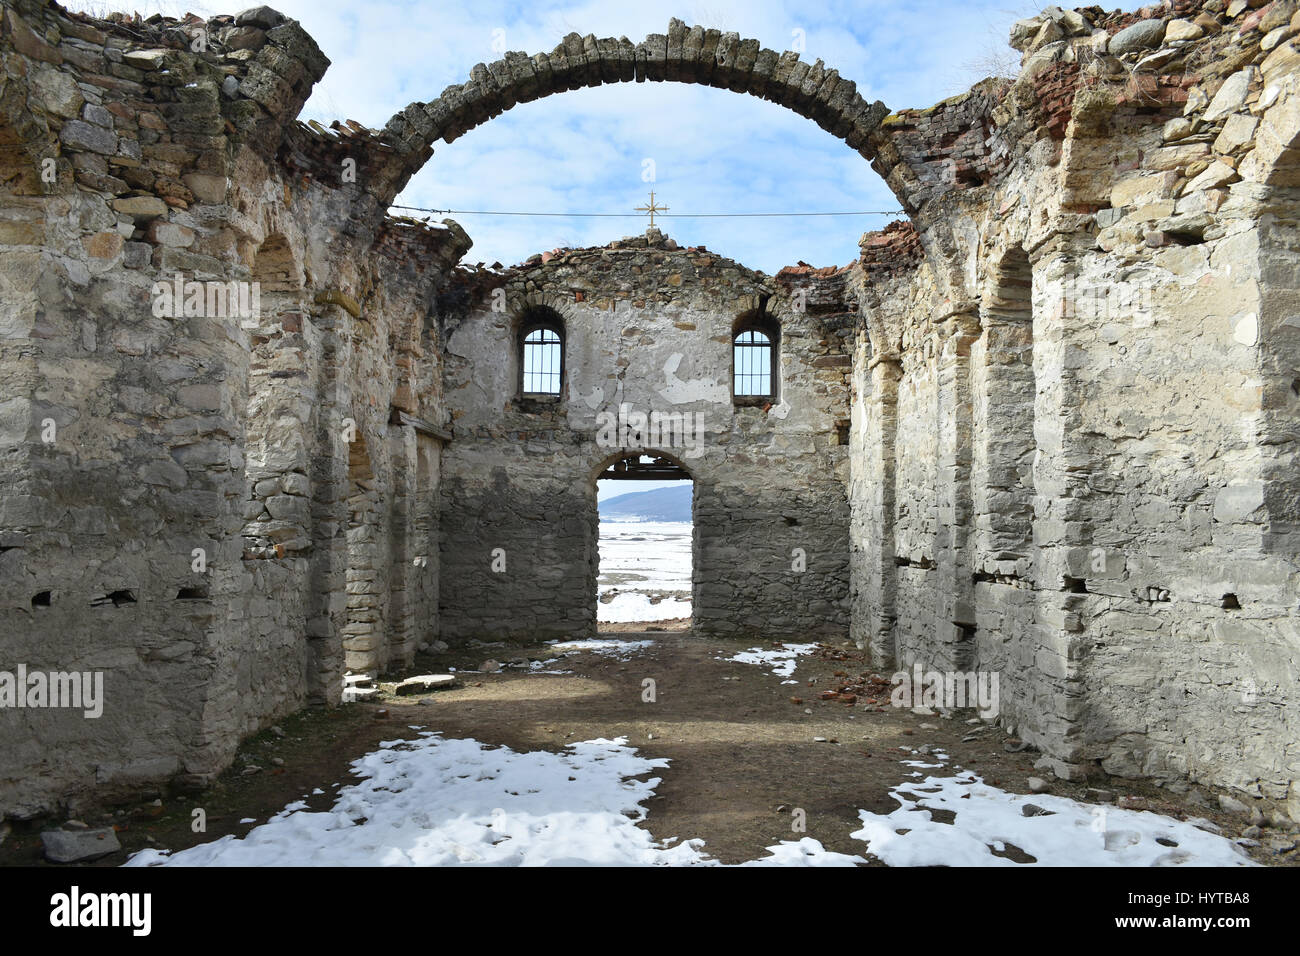 Ruinas de la antigua iglesia ortodoxa de San Ivan Rilski abandonadas en el fondo del Embalse Zhrebchevo durante el régimen comunista en Bulgaria Foto de stock